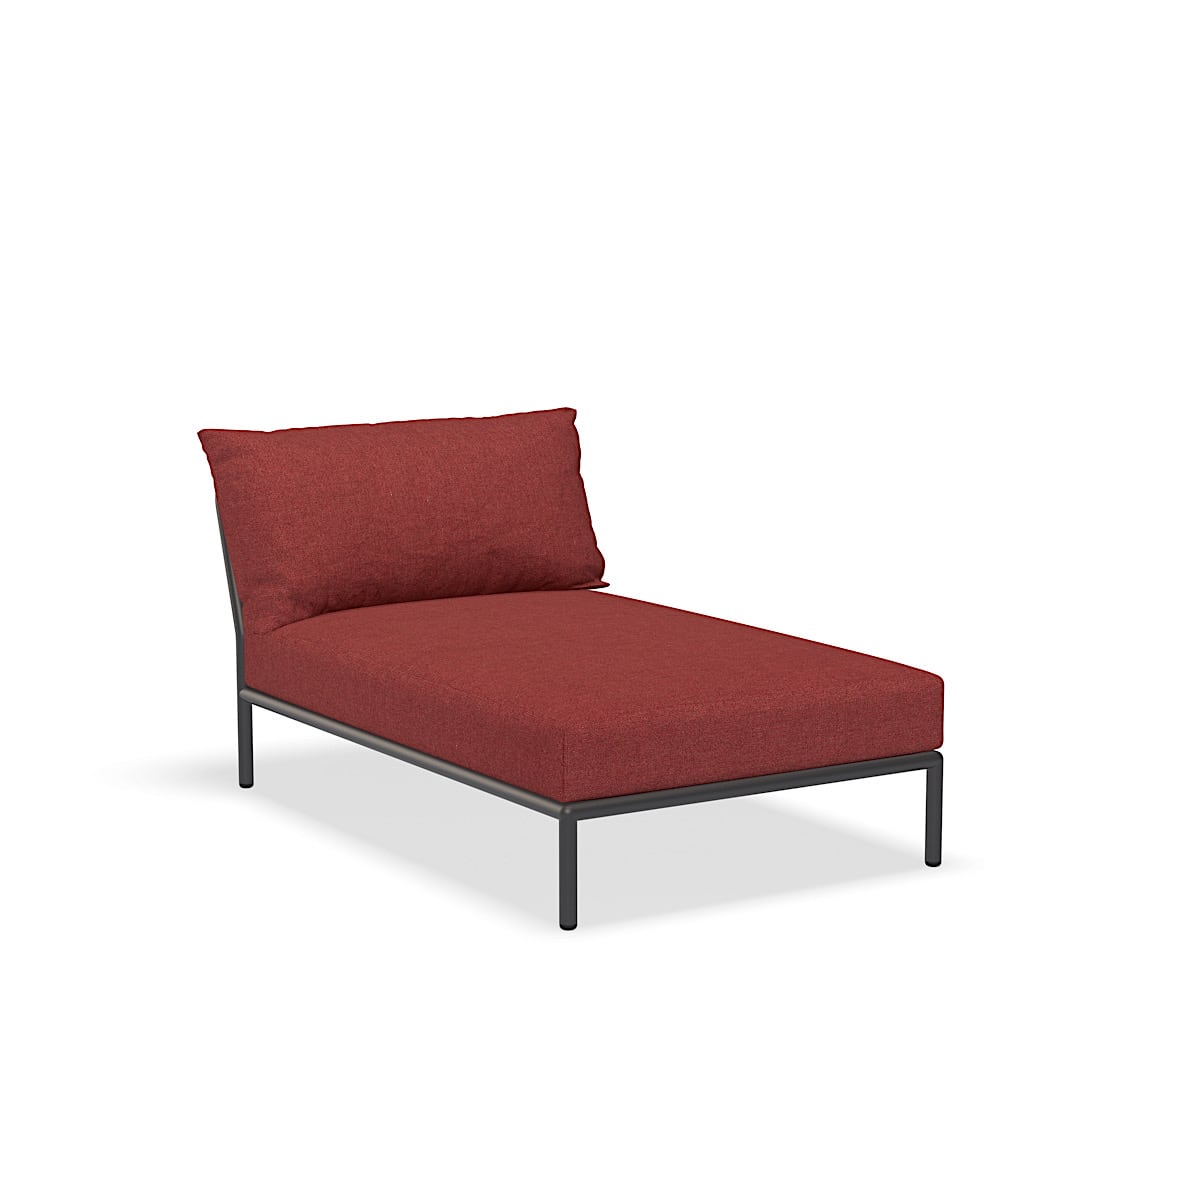 كرسي الصالة - 22209-1651 - كرسي صالة ، قرمزي (HERITAGE) ، هيكل رمادي غامق